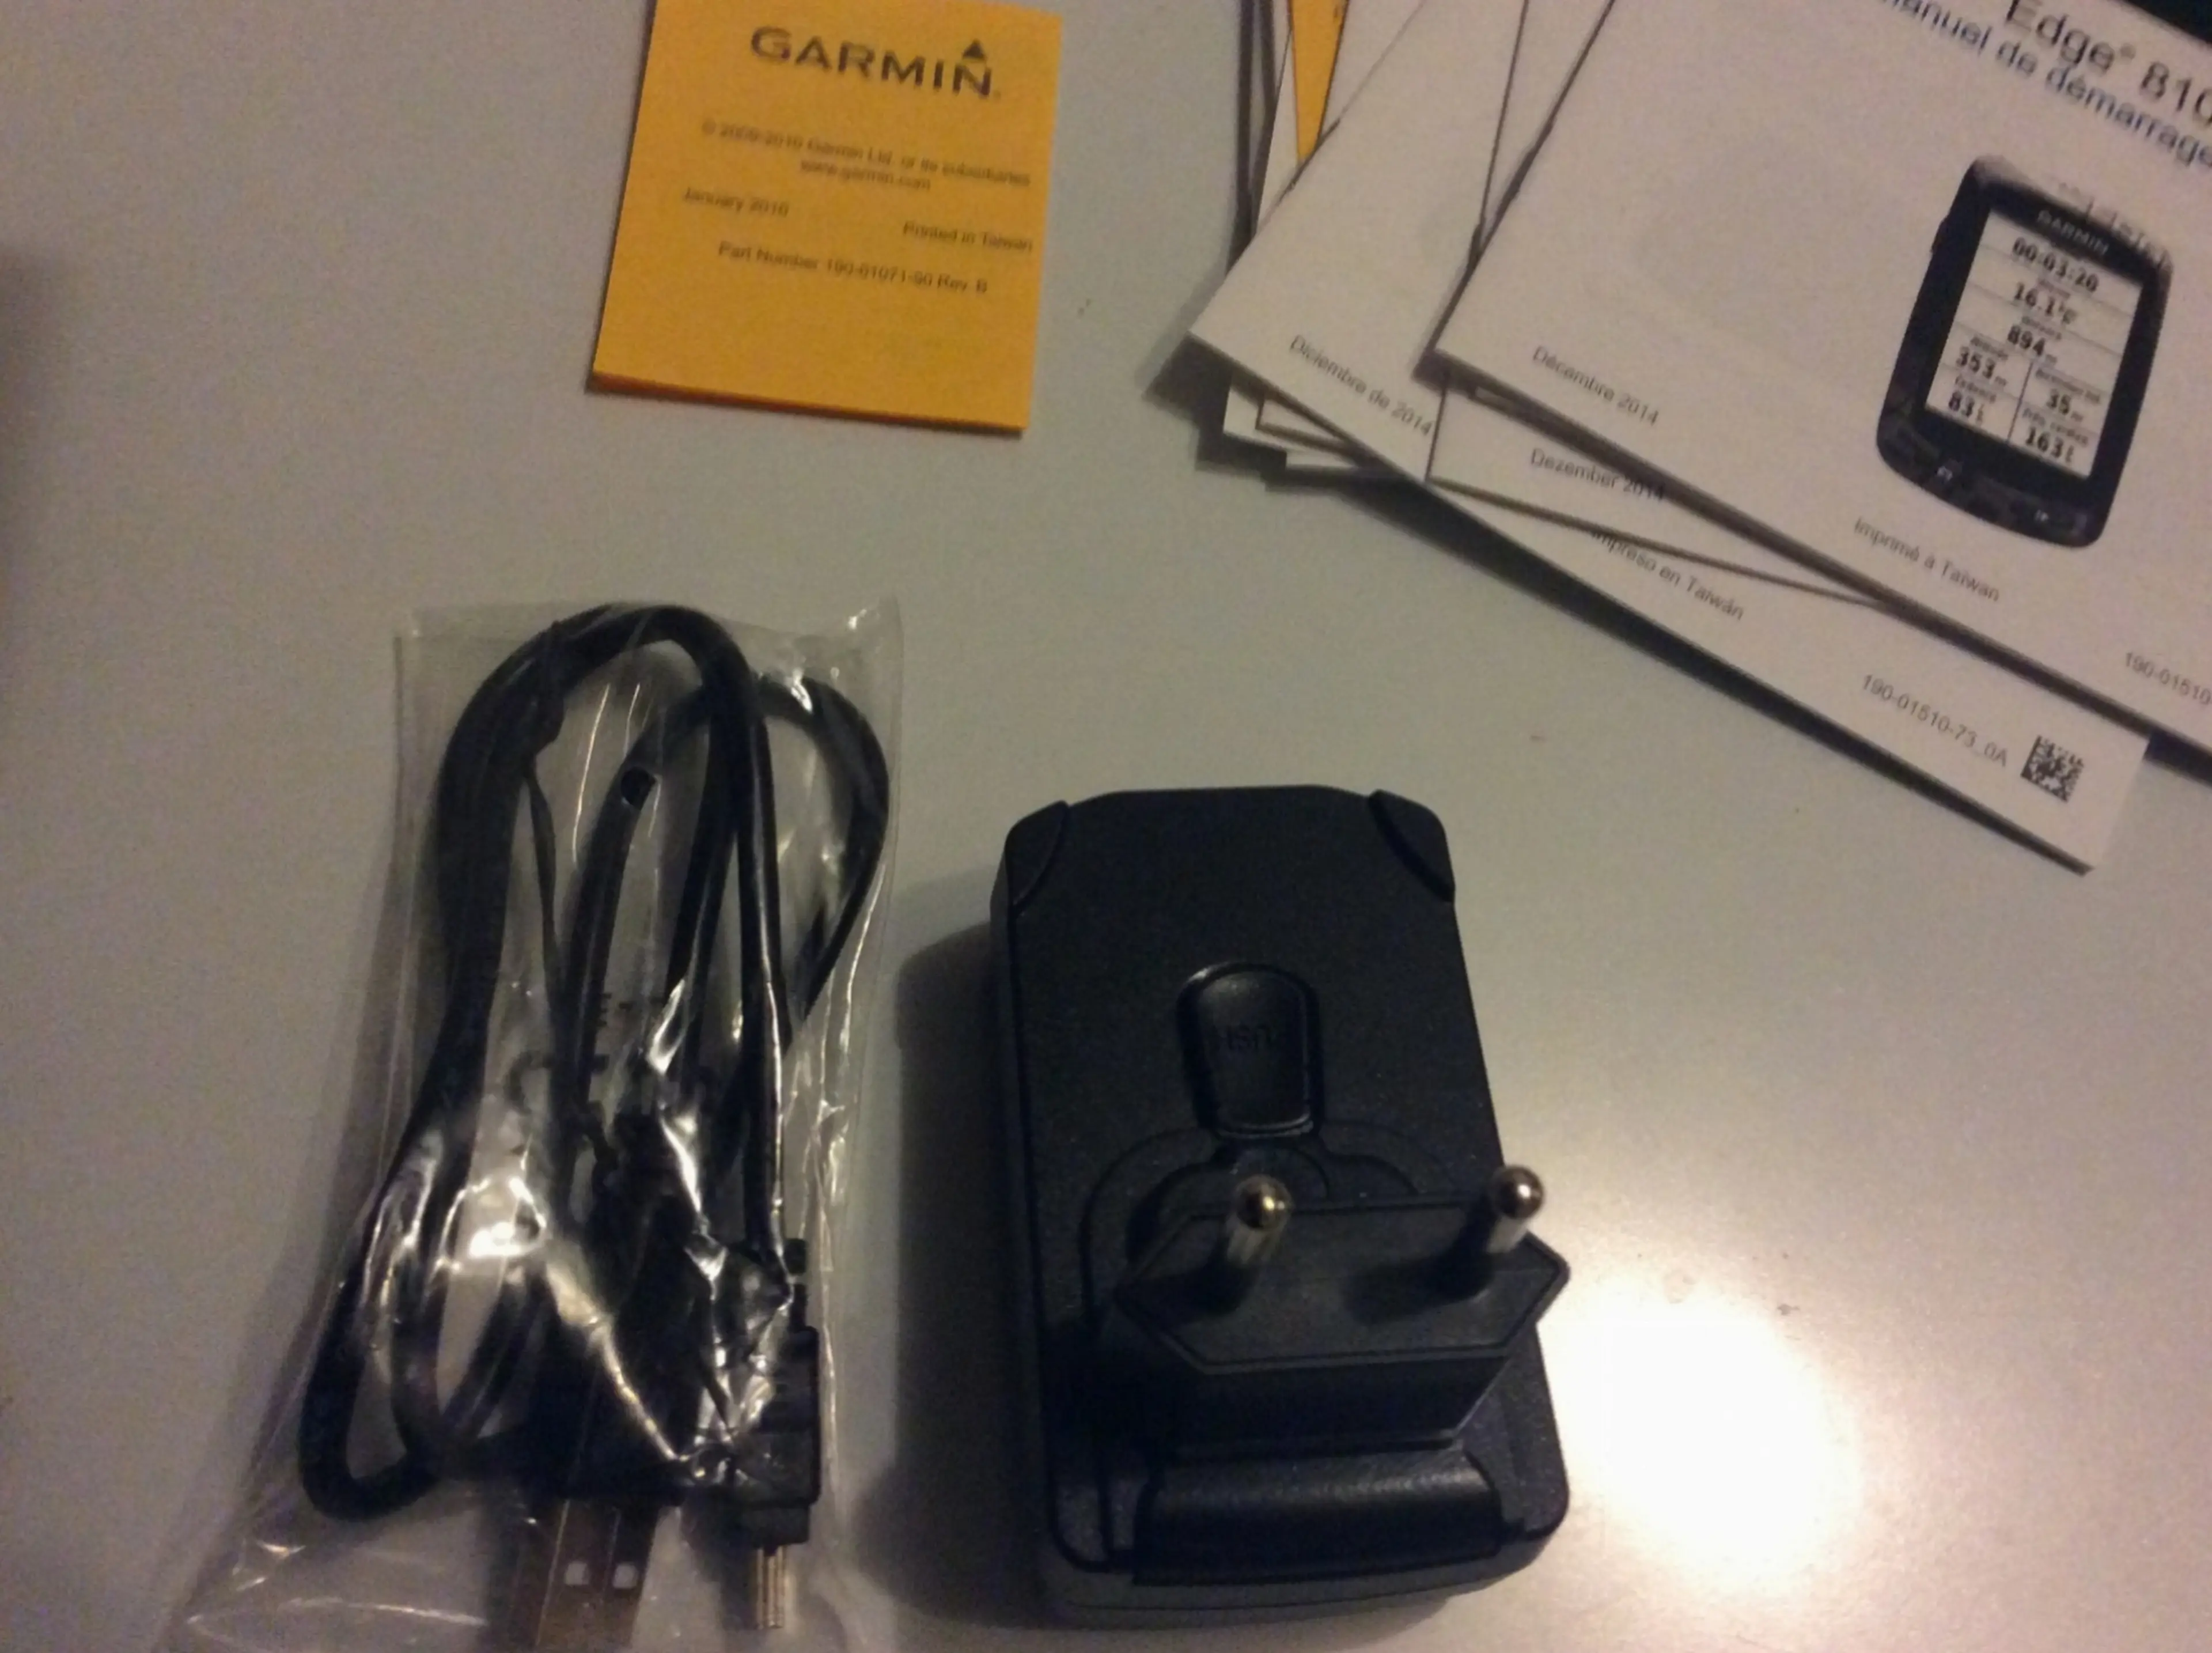 2. Garmin încărcător, cablu USB